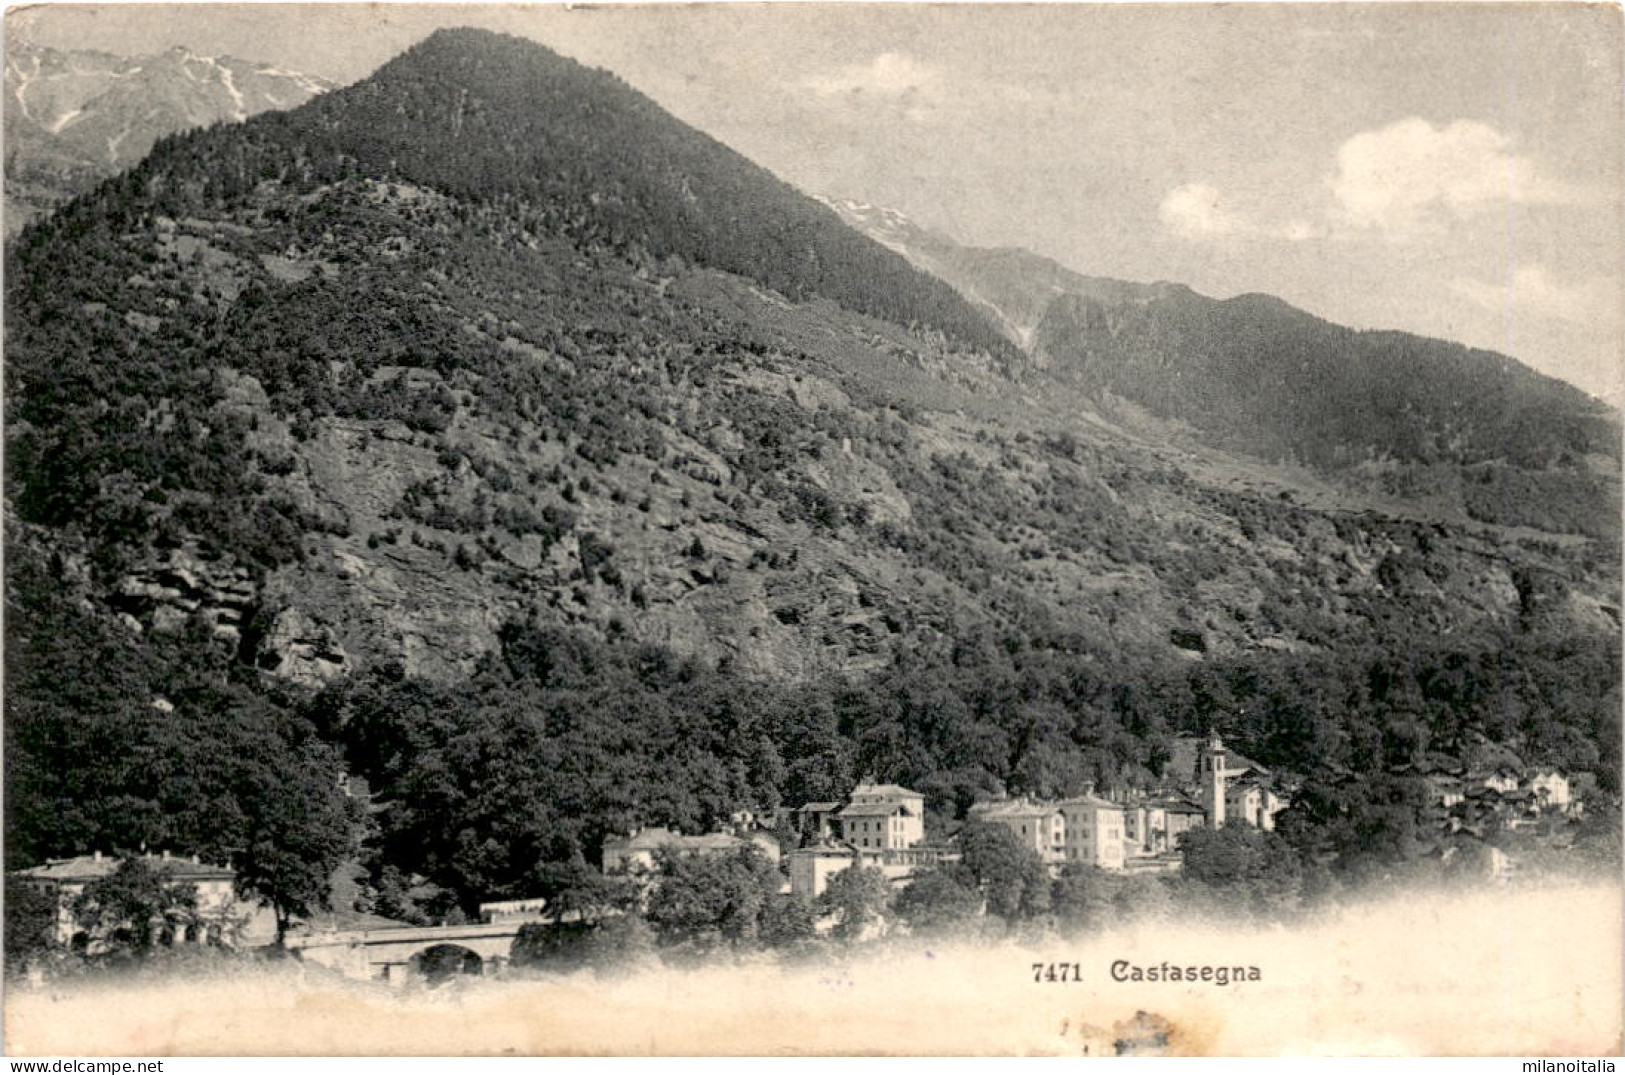 Castasegna (7471) * 5. 9. 1909 - Castasegna